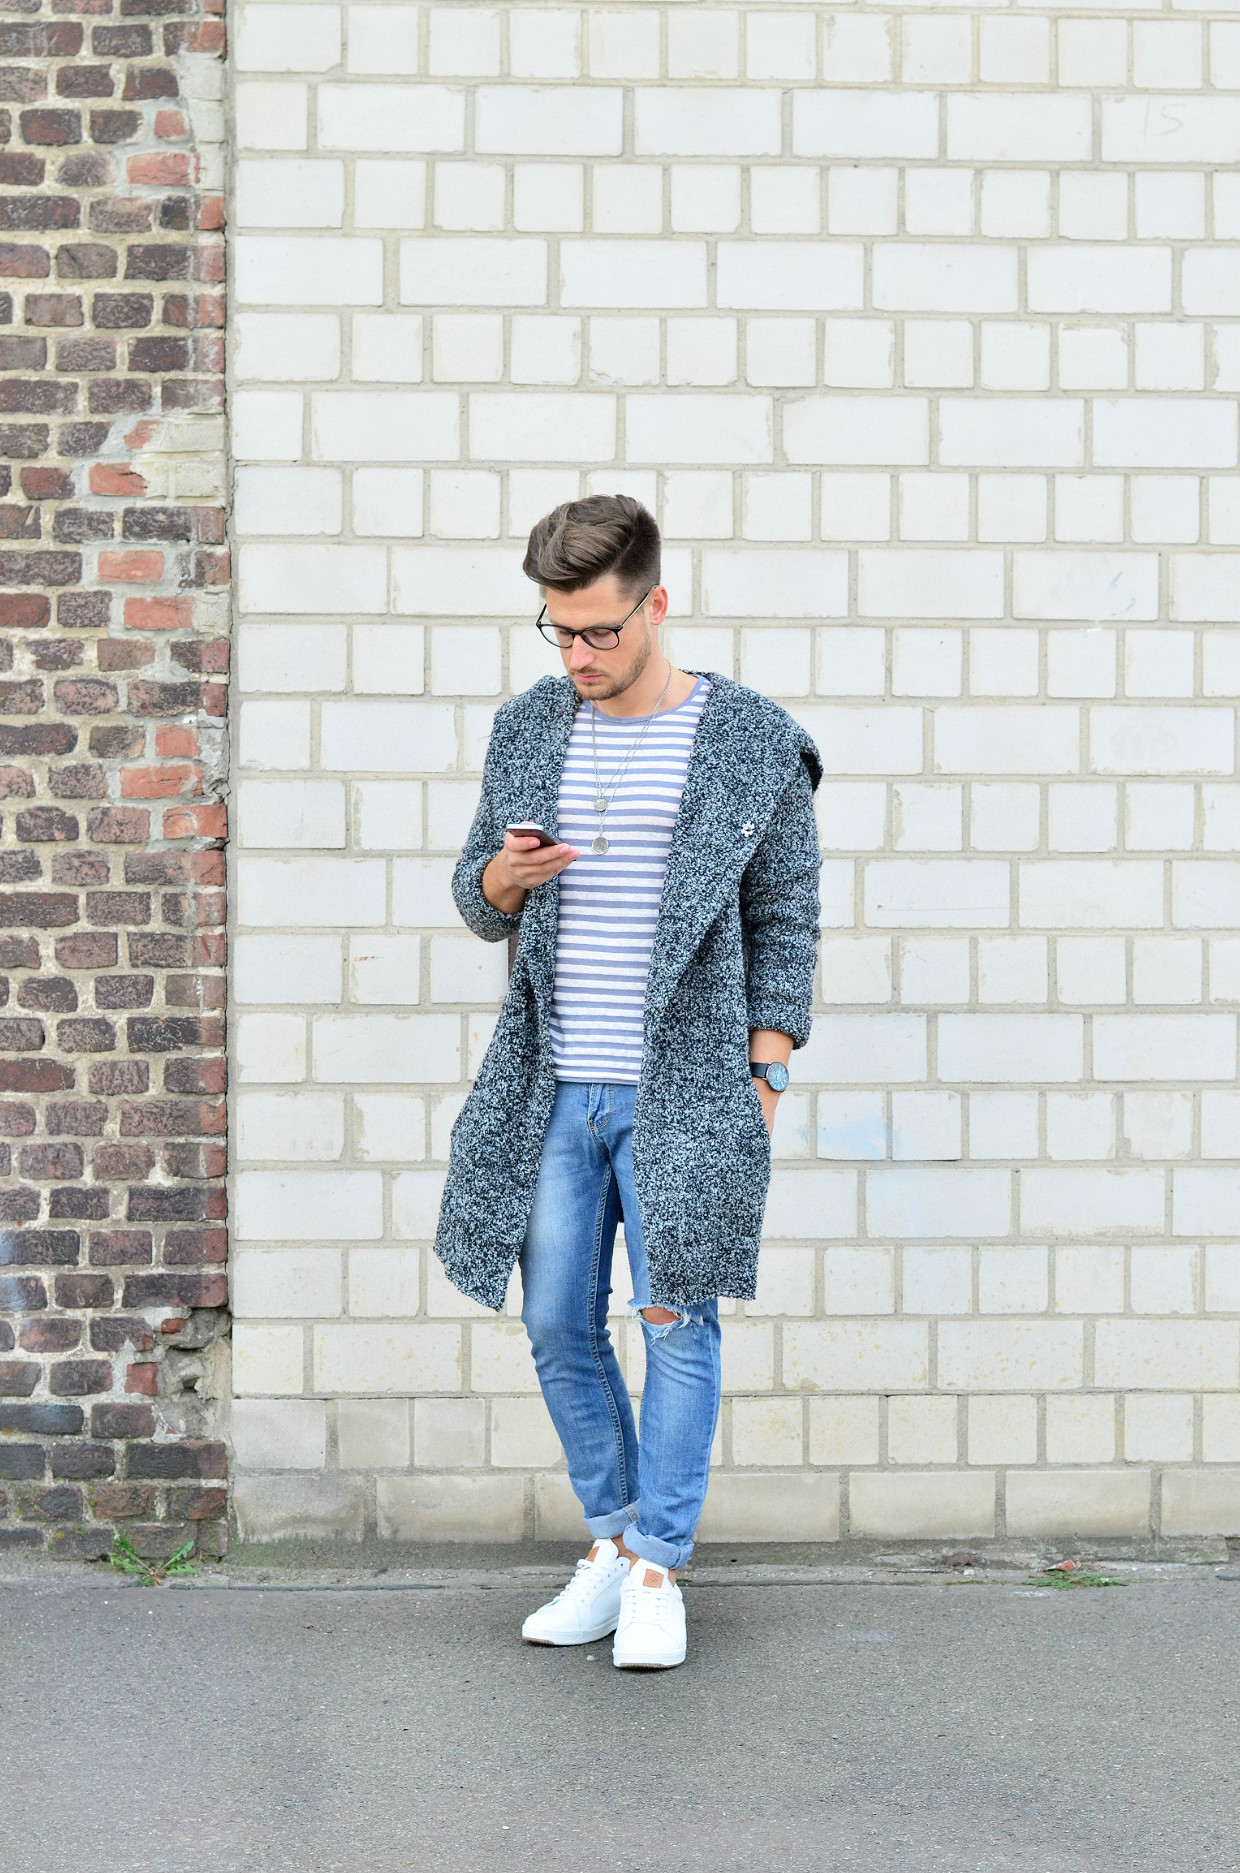 Männer-Blog-Berlin-Outfit-Cardigan-Jeans-Streifenshirt-Sneaker-Fashion